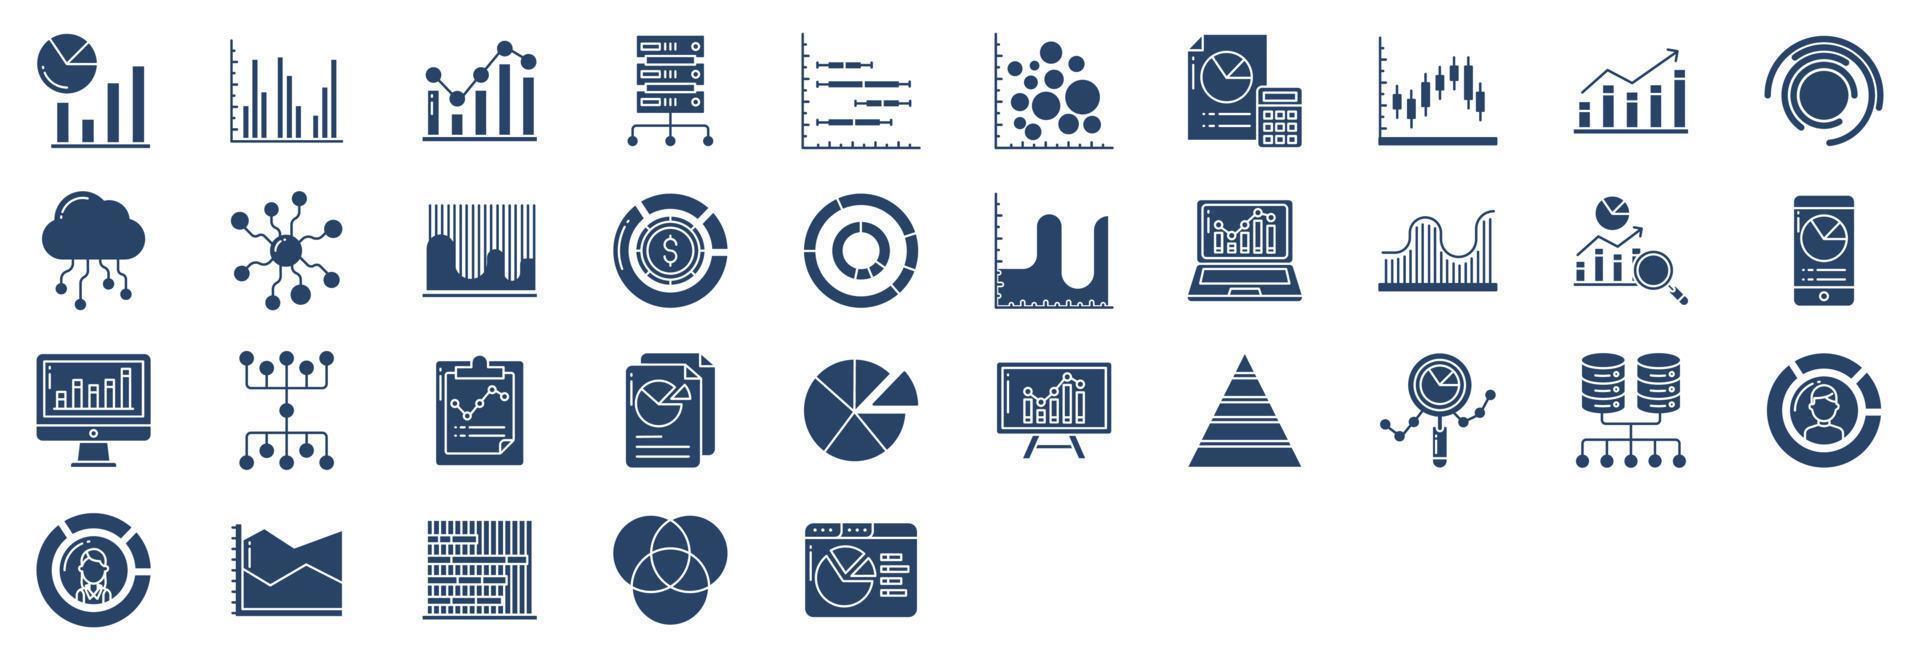 coleção de ícones relacionados à análise de gráficos e dados, incluindo ícones como gráfico de barras, big data, calculadora, diagrama e muito mais. ilustrações vetoriais, conjunto perfeito de pixels vetor